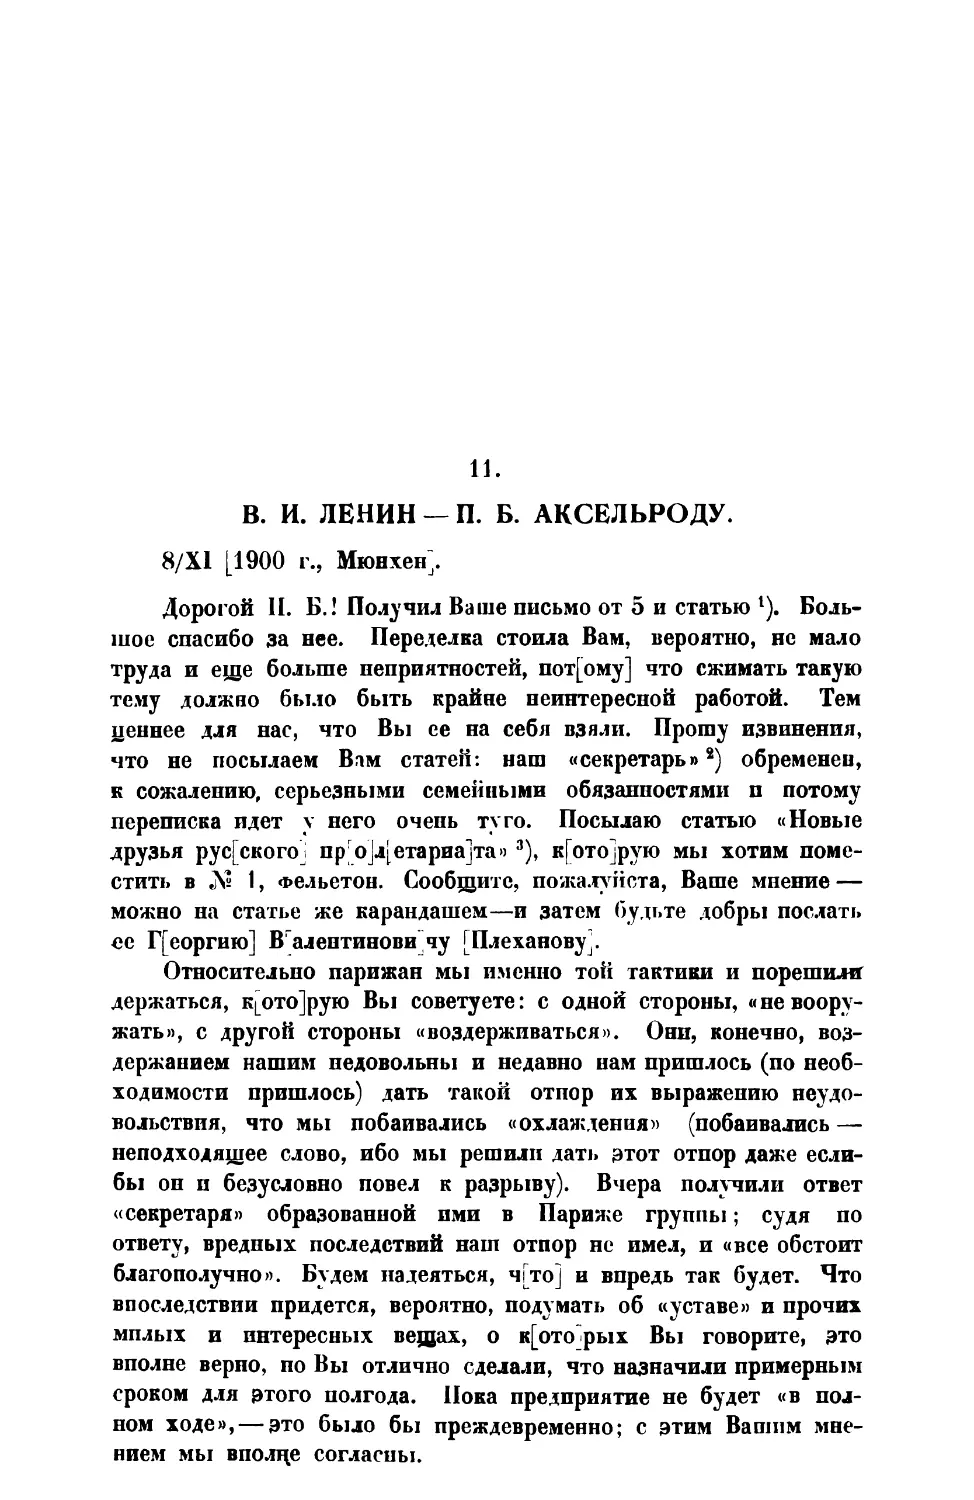 11. В. И. Ленин. — Письмо П. Б. Аксельроду от 8 XI 1900 г.